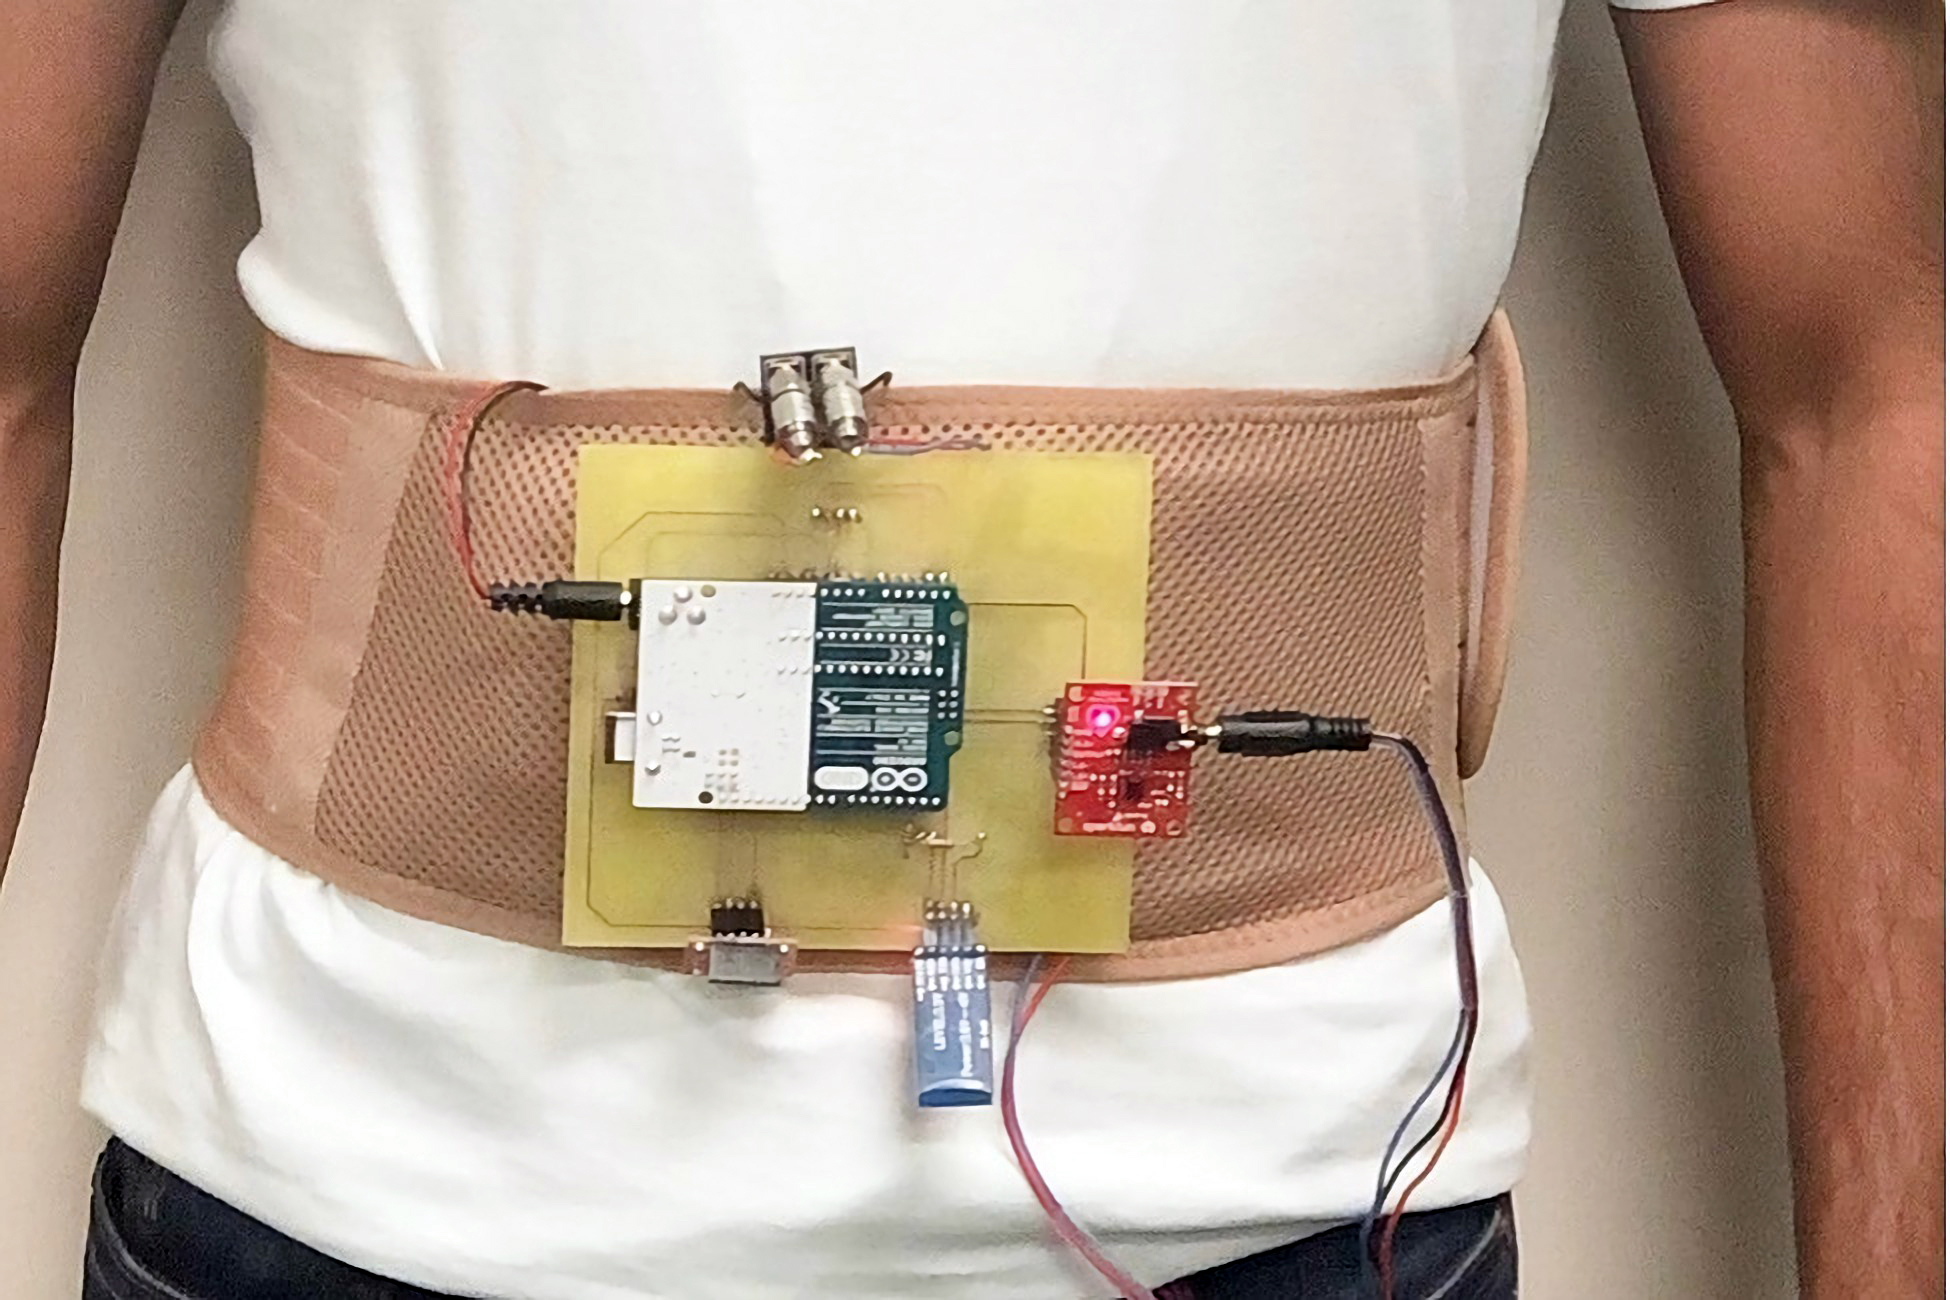 El cinturón con sensores que detecta la insuficiencia cardíaca (VIDEO)